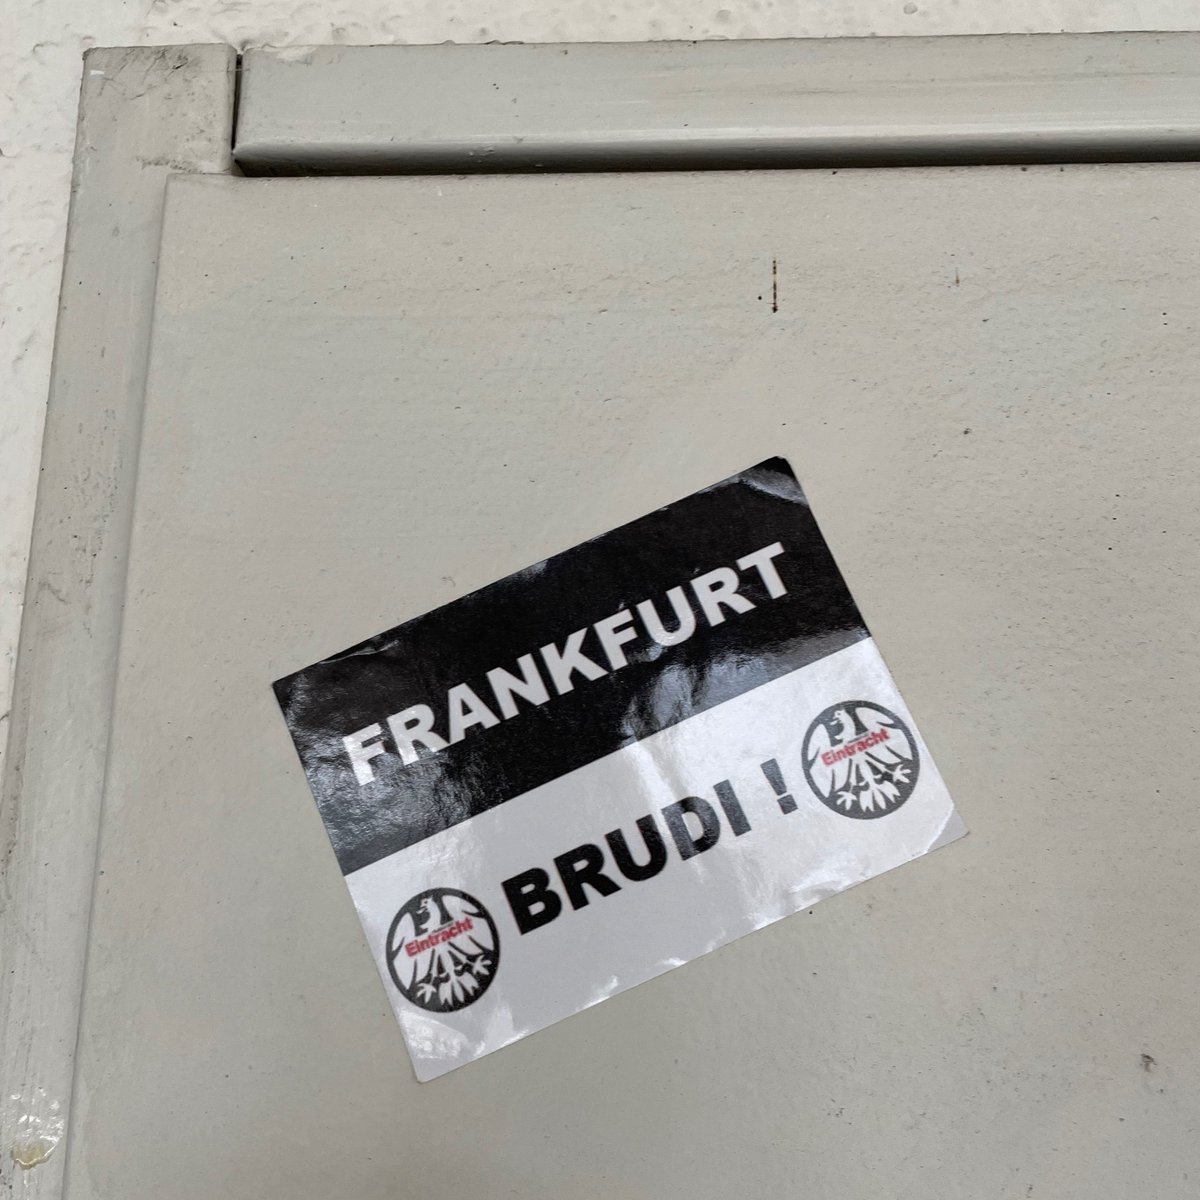 🇩🇪 Eintracht Frankfurt
@eintracht @EintrachtFrauen @HEFpod @eintracht_lz @FrankfurtSGE @eintracht_arg
#SGE
#ultrasstickers #footballstickers #footballculture #Ultras #StickerHunting